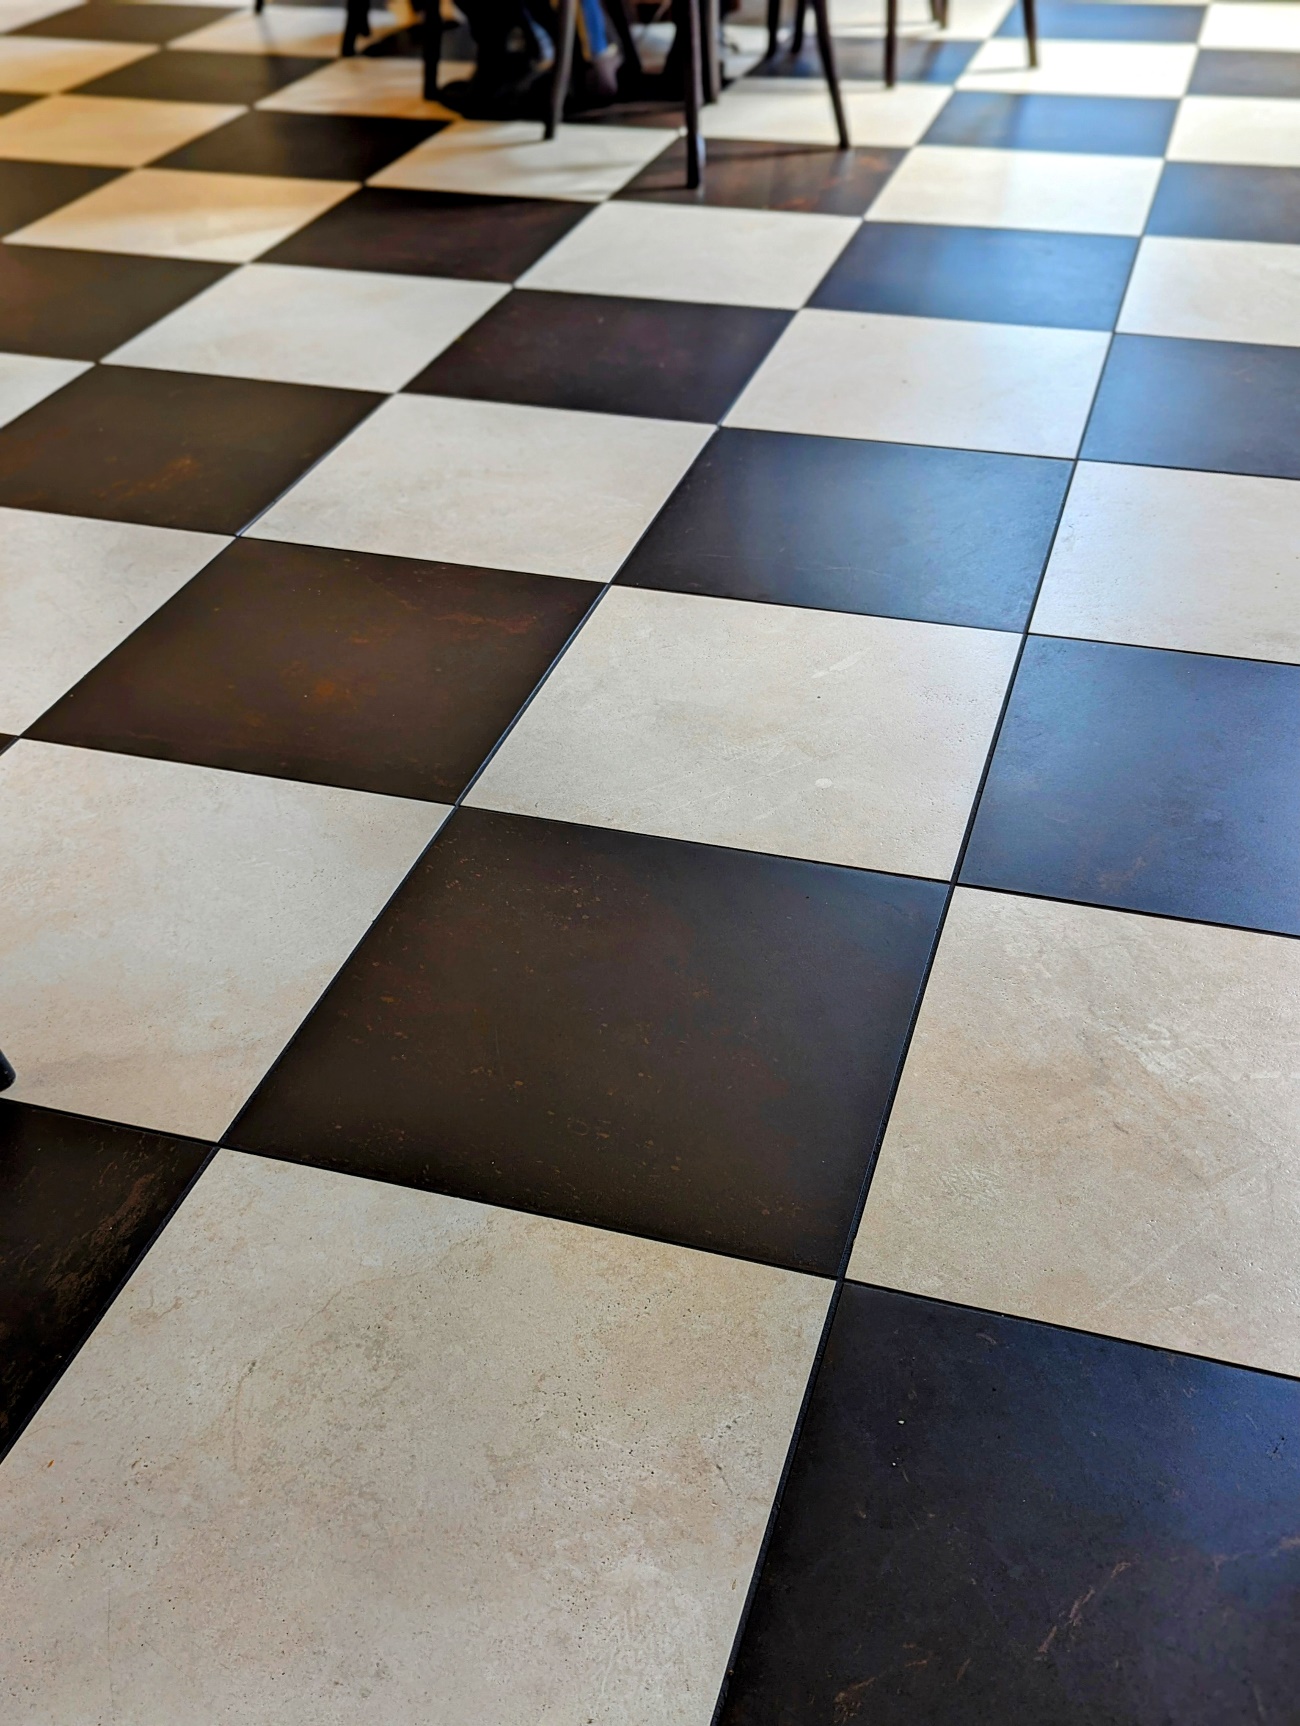 床はチェスボードを思わせる白と黒のタイルでとってもオシャレ